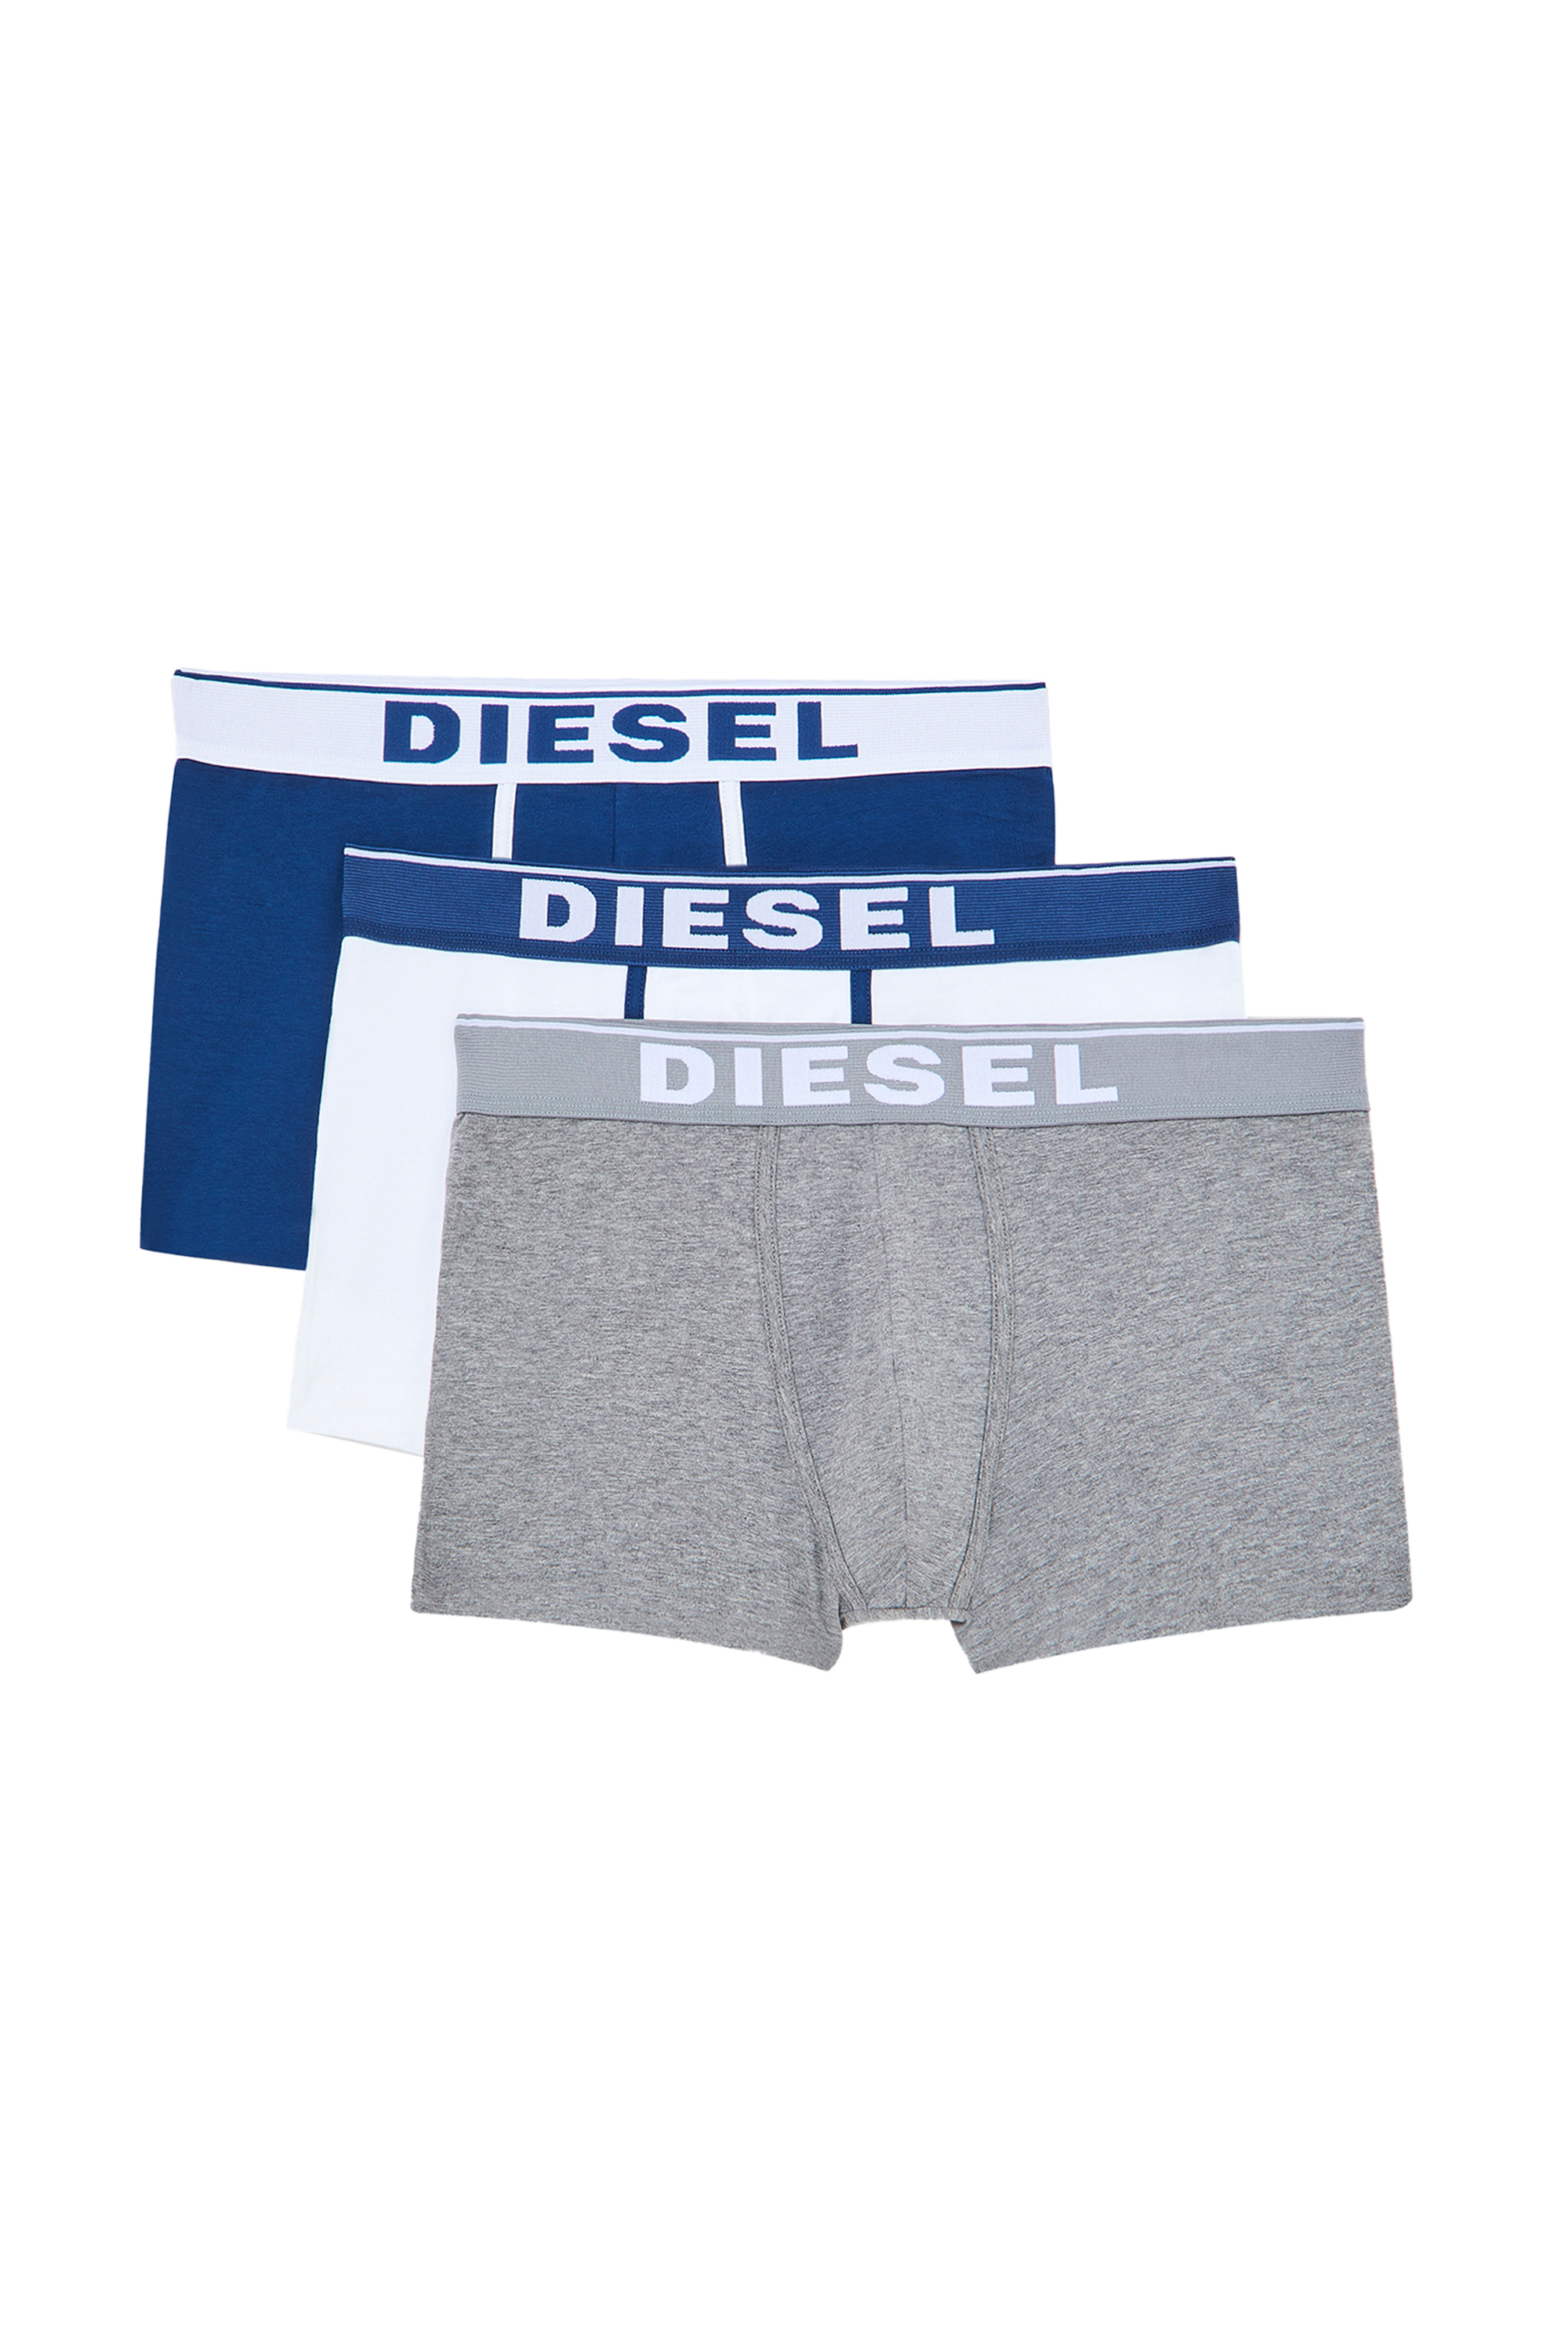 Diesel - UMBX-DAMIENTHREEPACK, White/Blue - Image 1